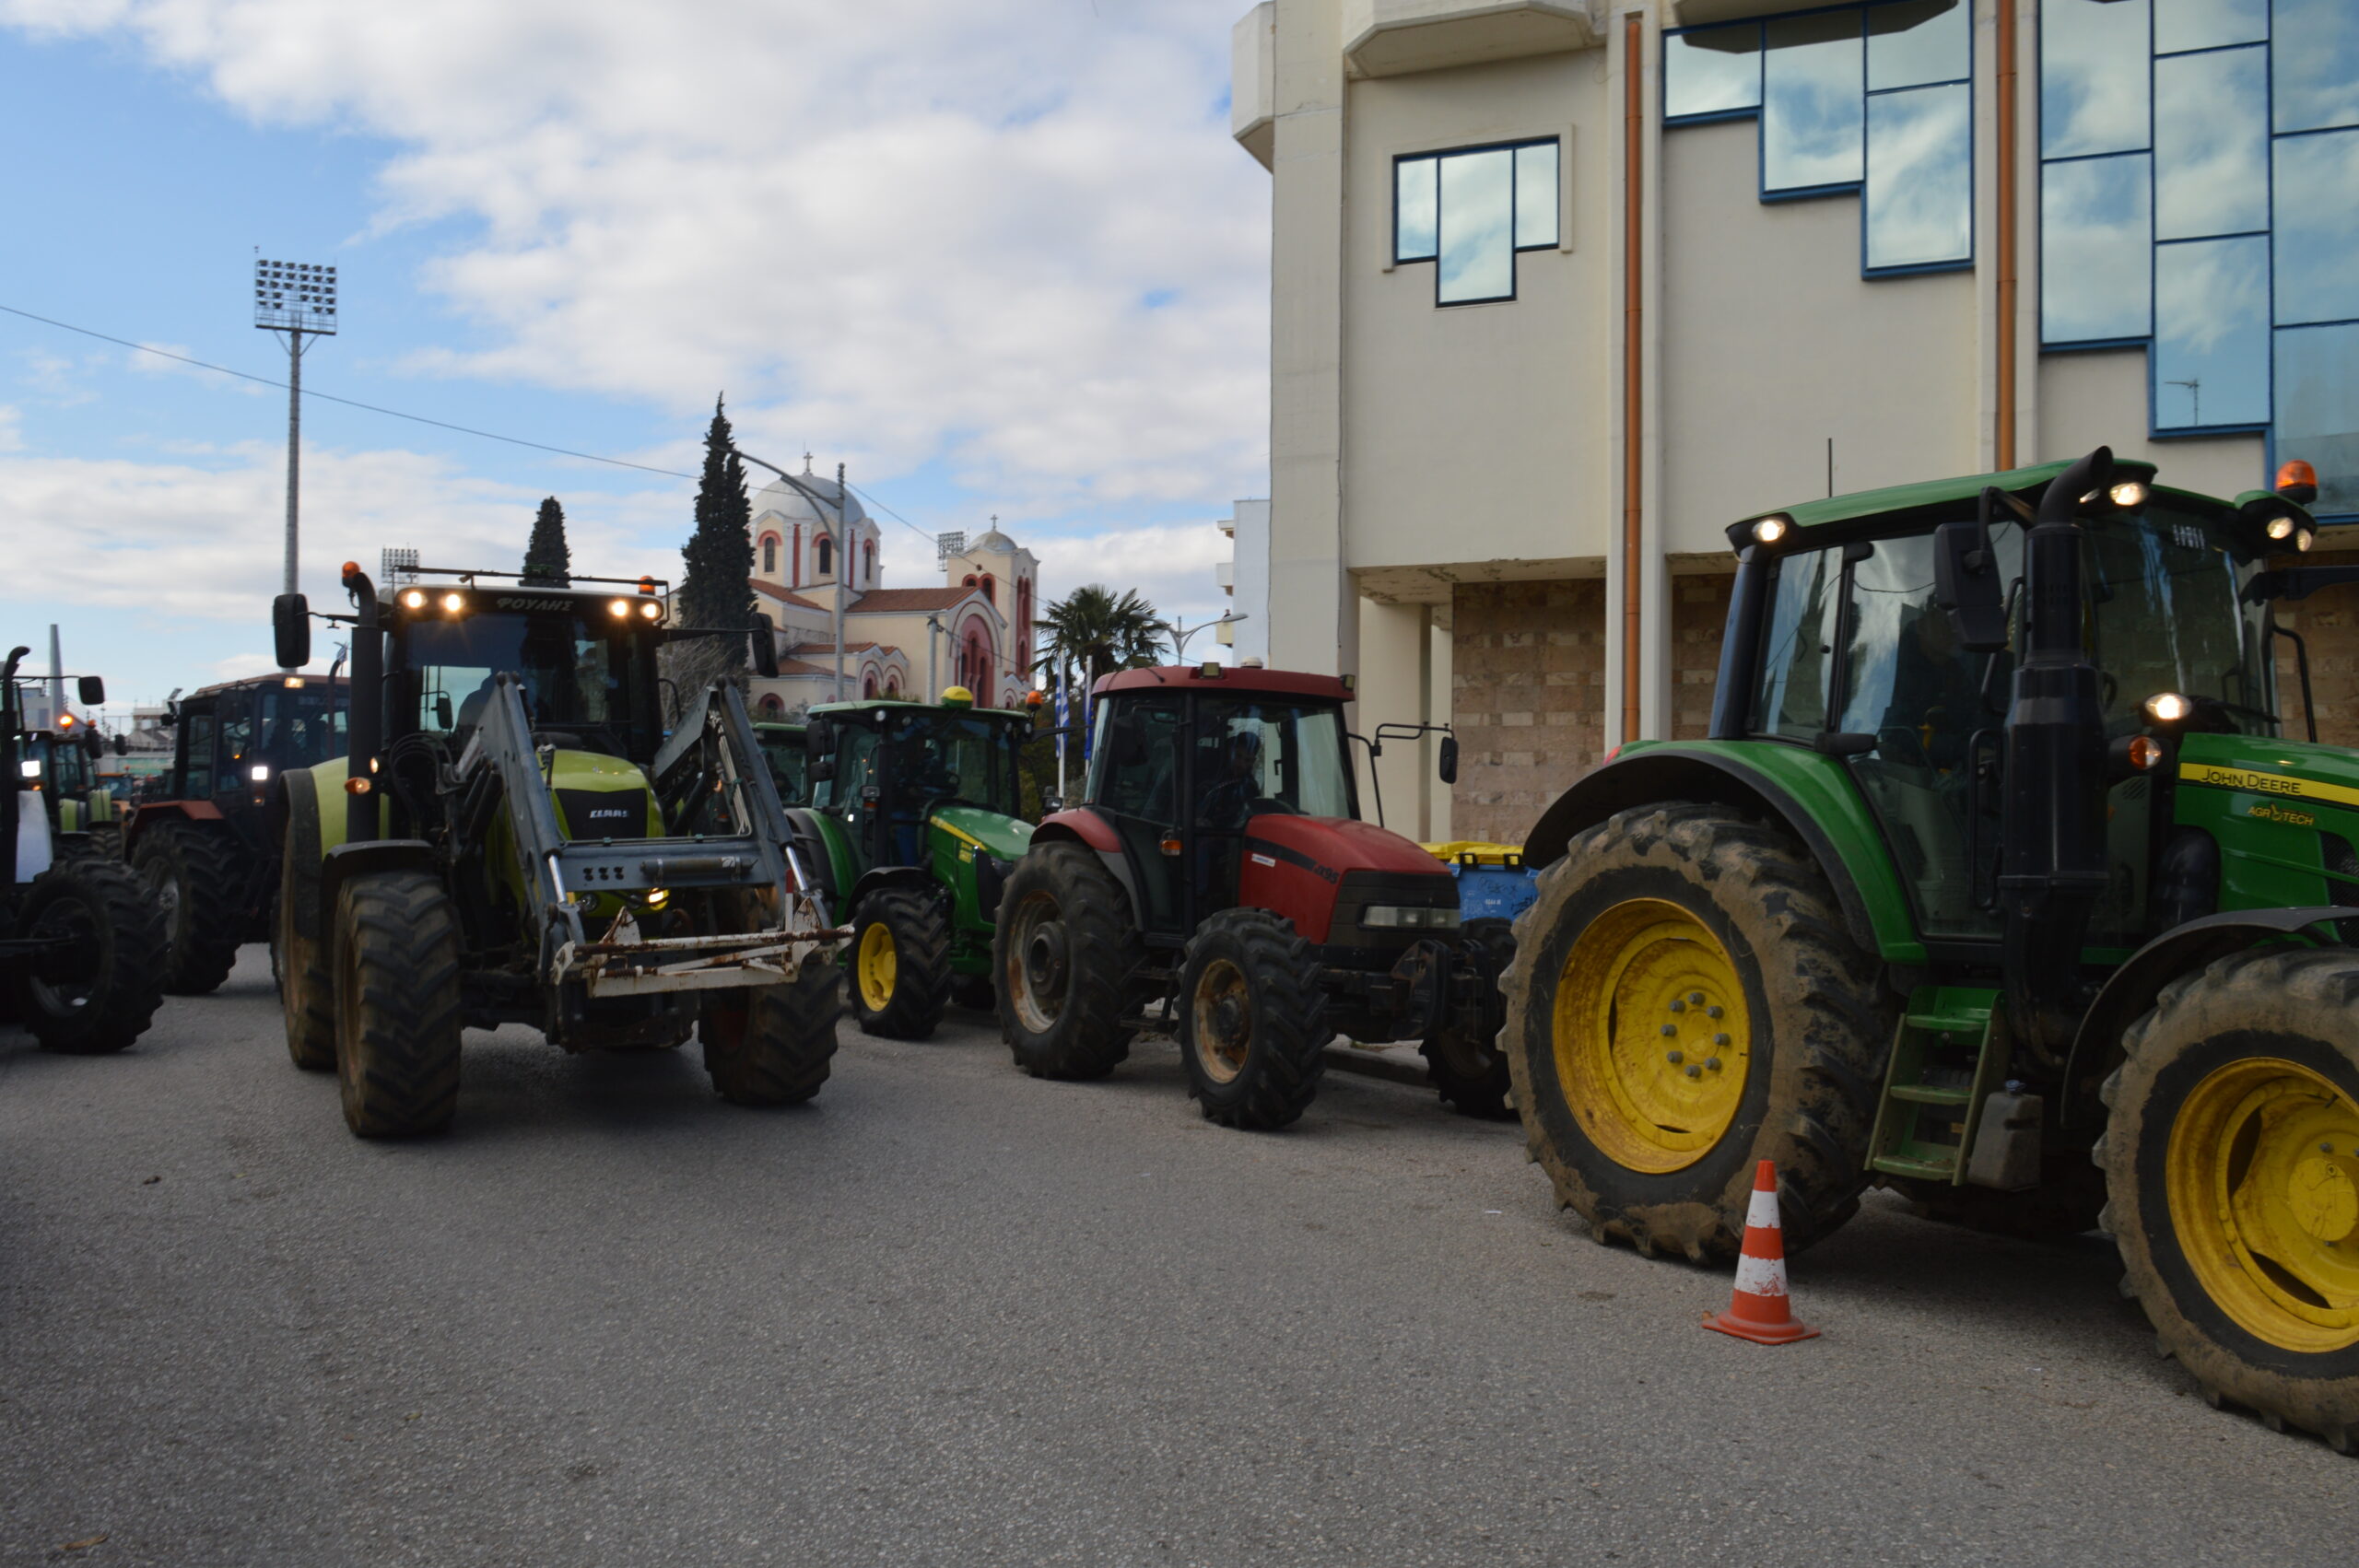 ΕΛ.ΑΣ: Έστησε μπλόκο στους αγρότες που θέλησαν να κλείσουν την Αθηνών – Θεσσαλονίκης με τα τρακτέρ (φώτο)